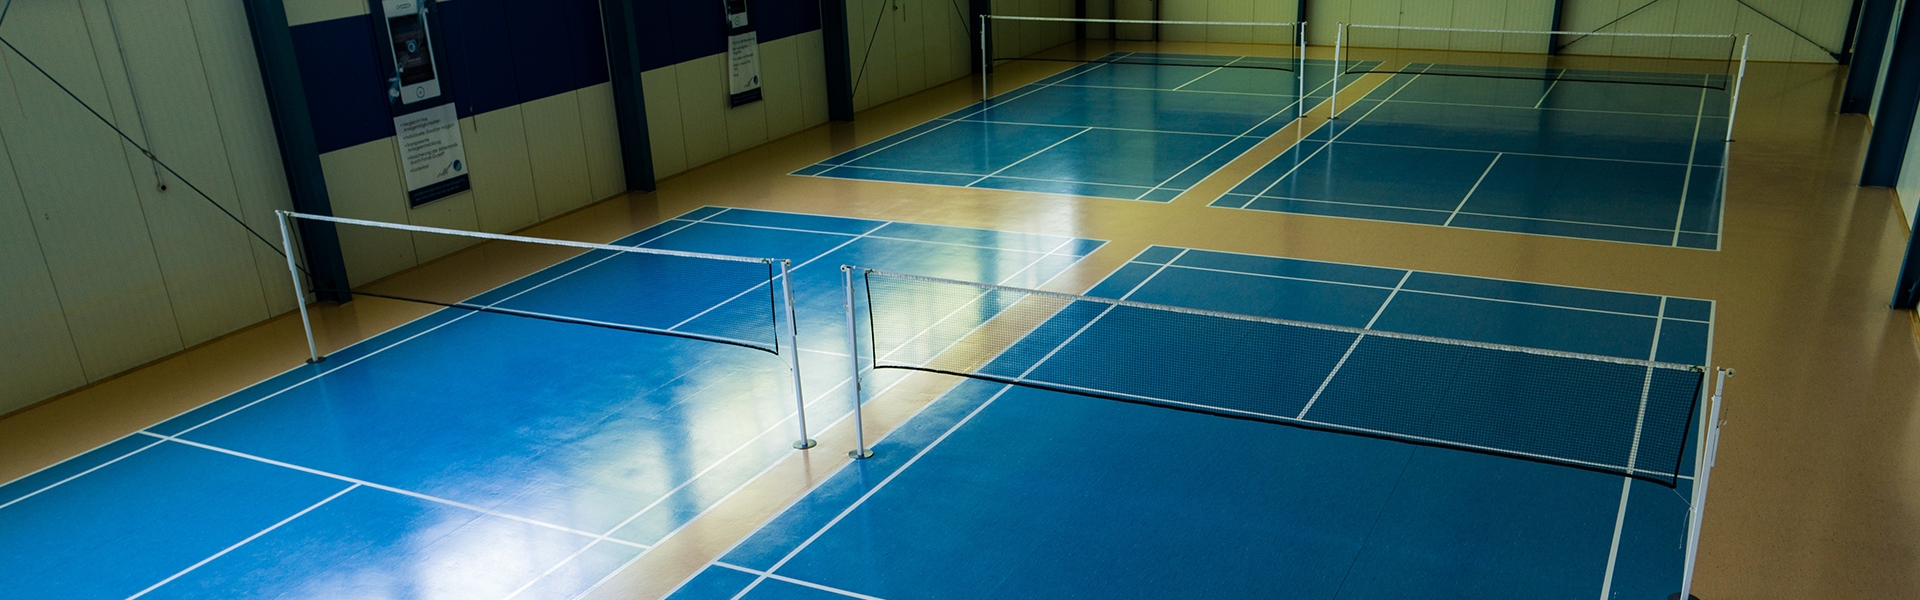 Badminton & Squash